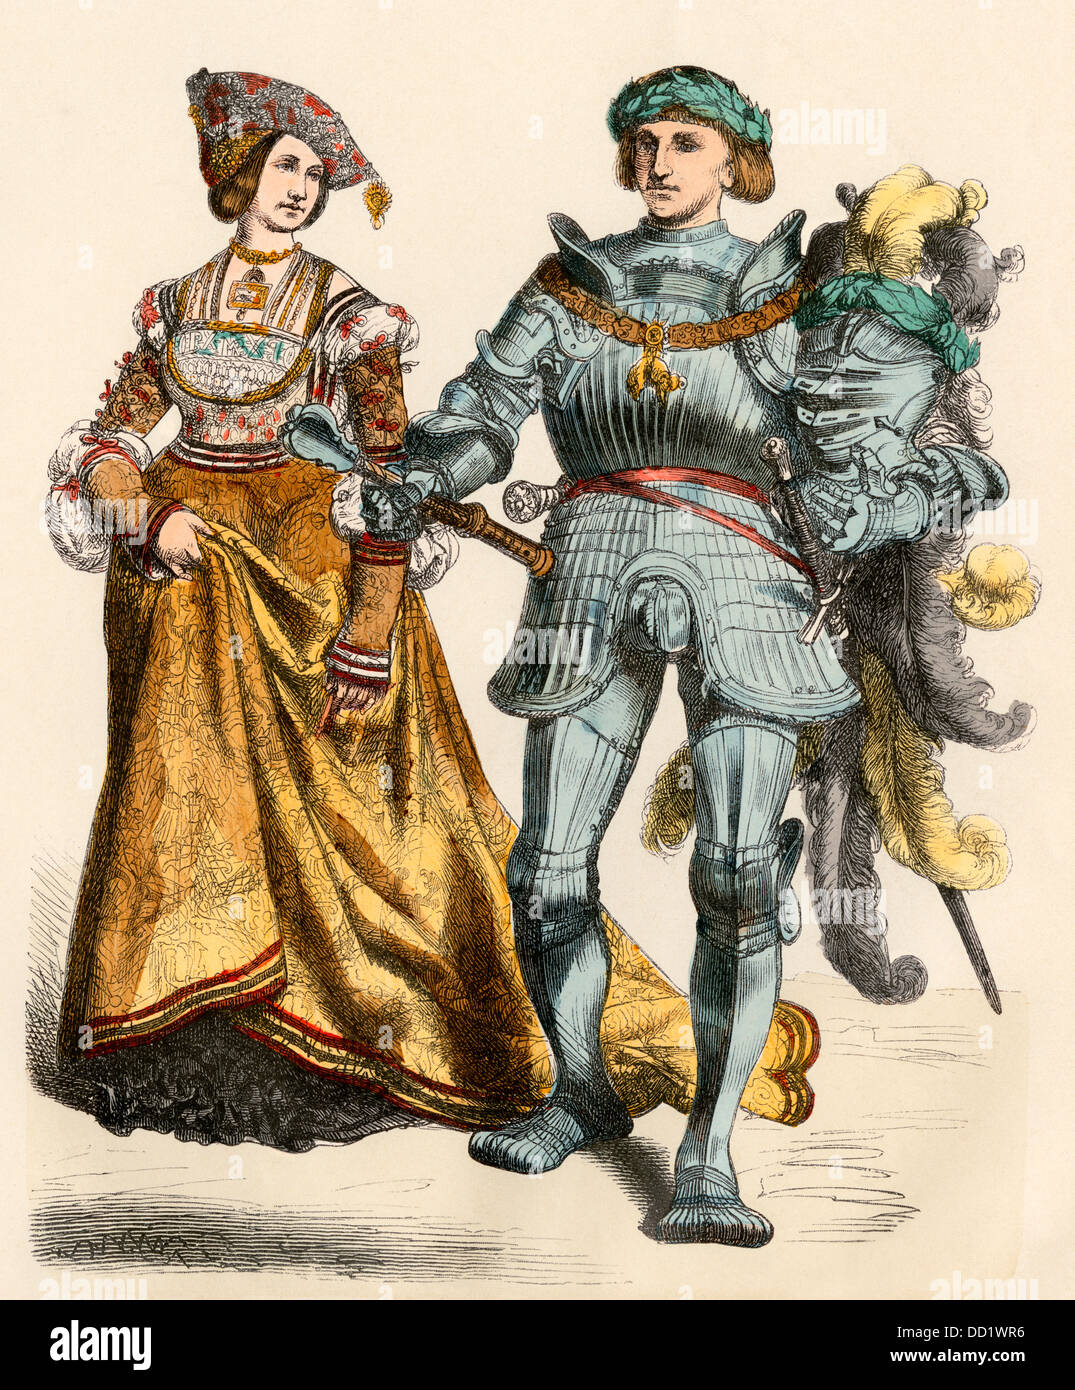 Le prince et la princesse allemande, années 1500. Impression couleur à la main Banque D'Images